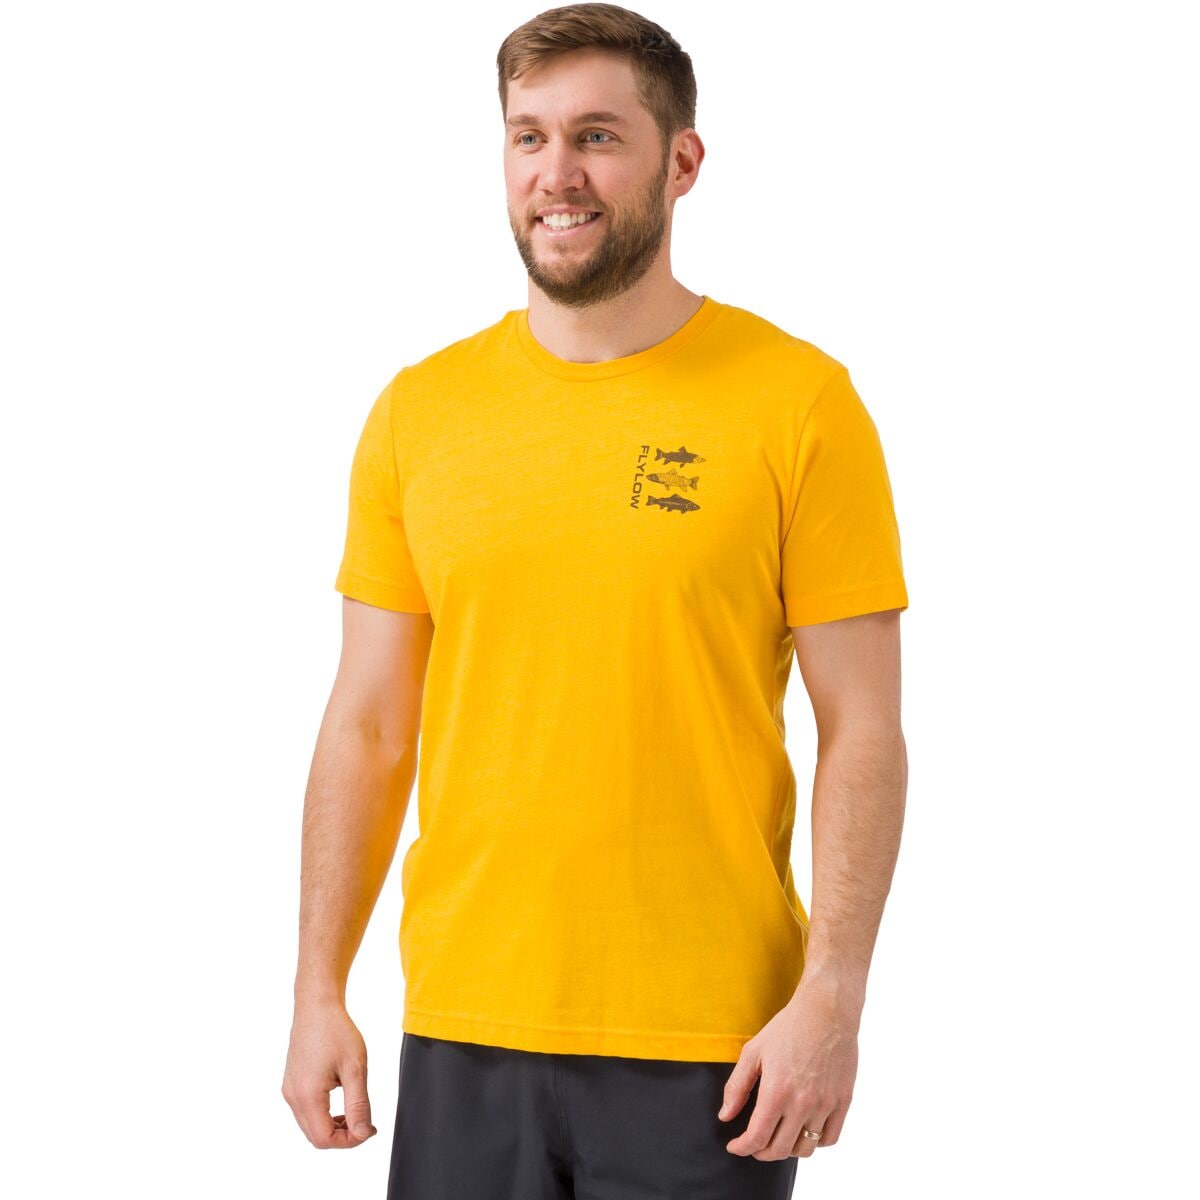 Trout T-Shirt - Men